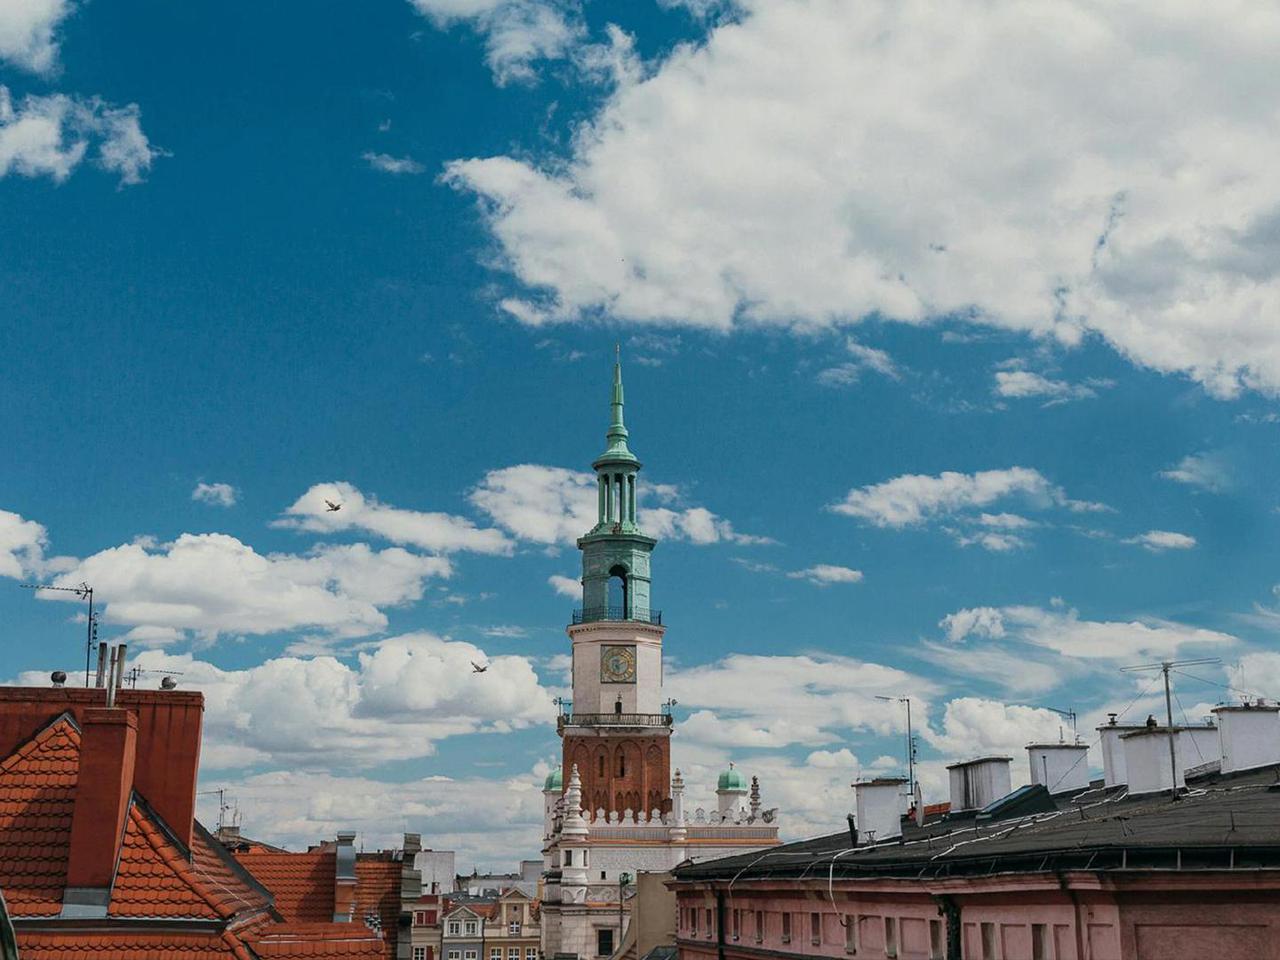 Jak dobrze znasz miasto Poznań? 7 punktów zdobędą prawdziwi znawcy!